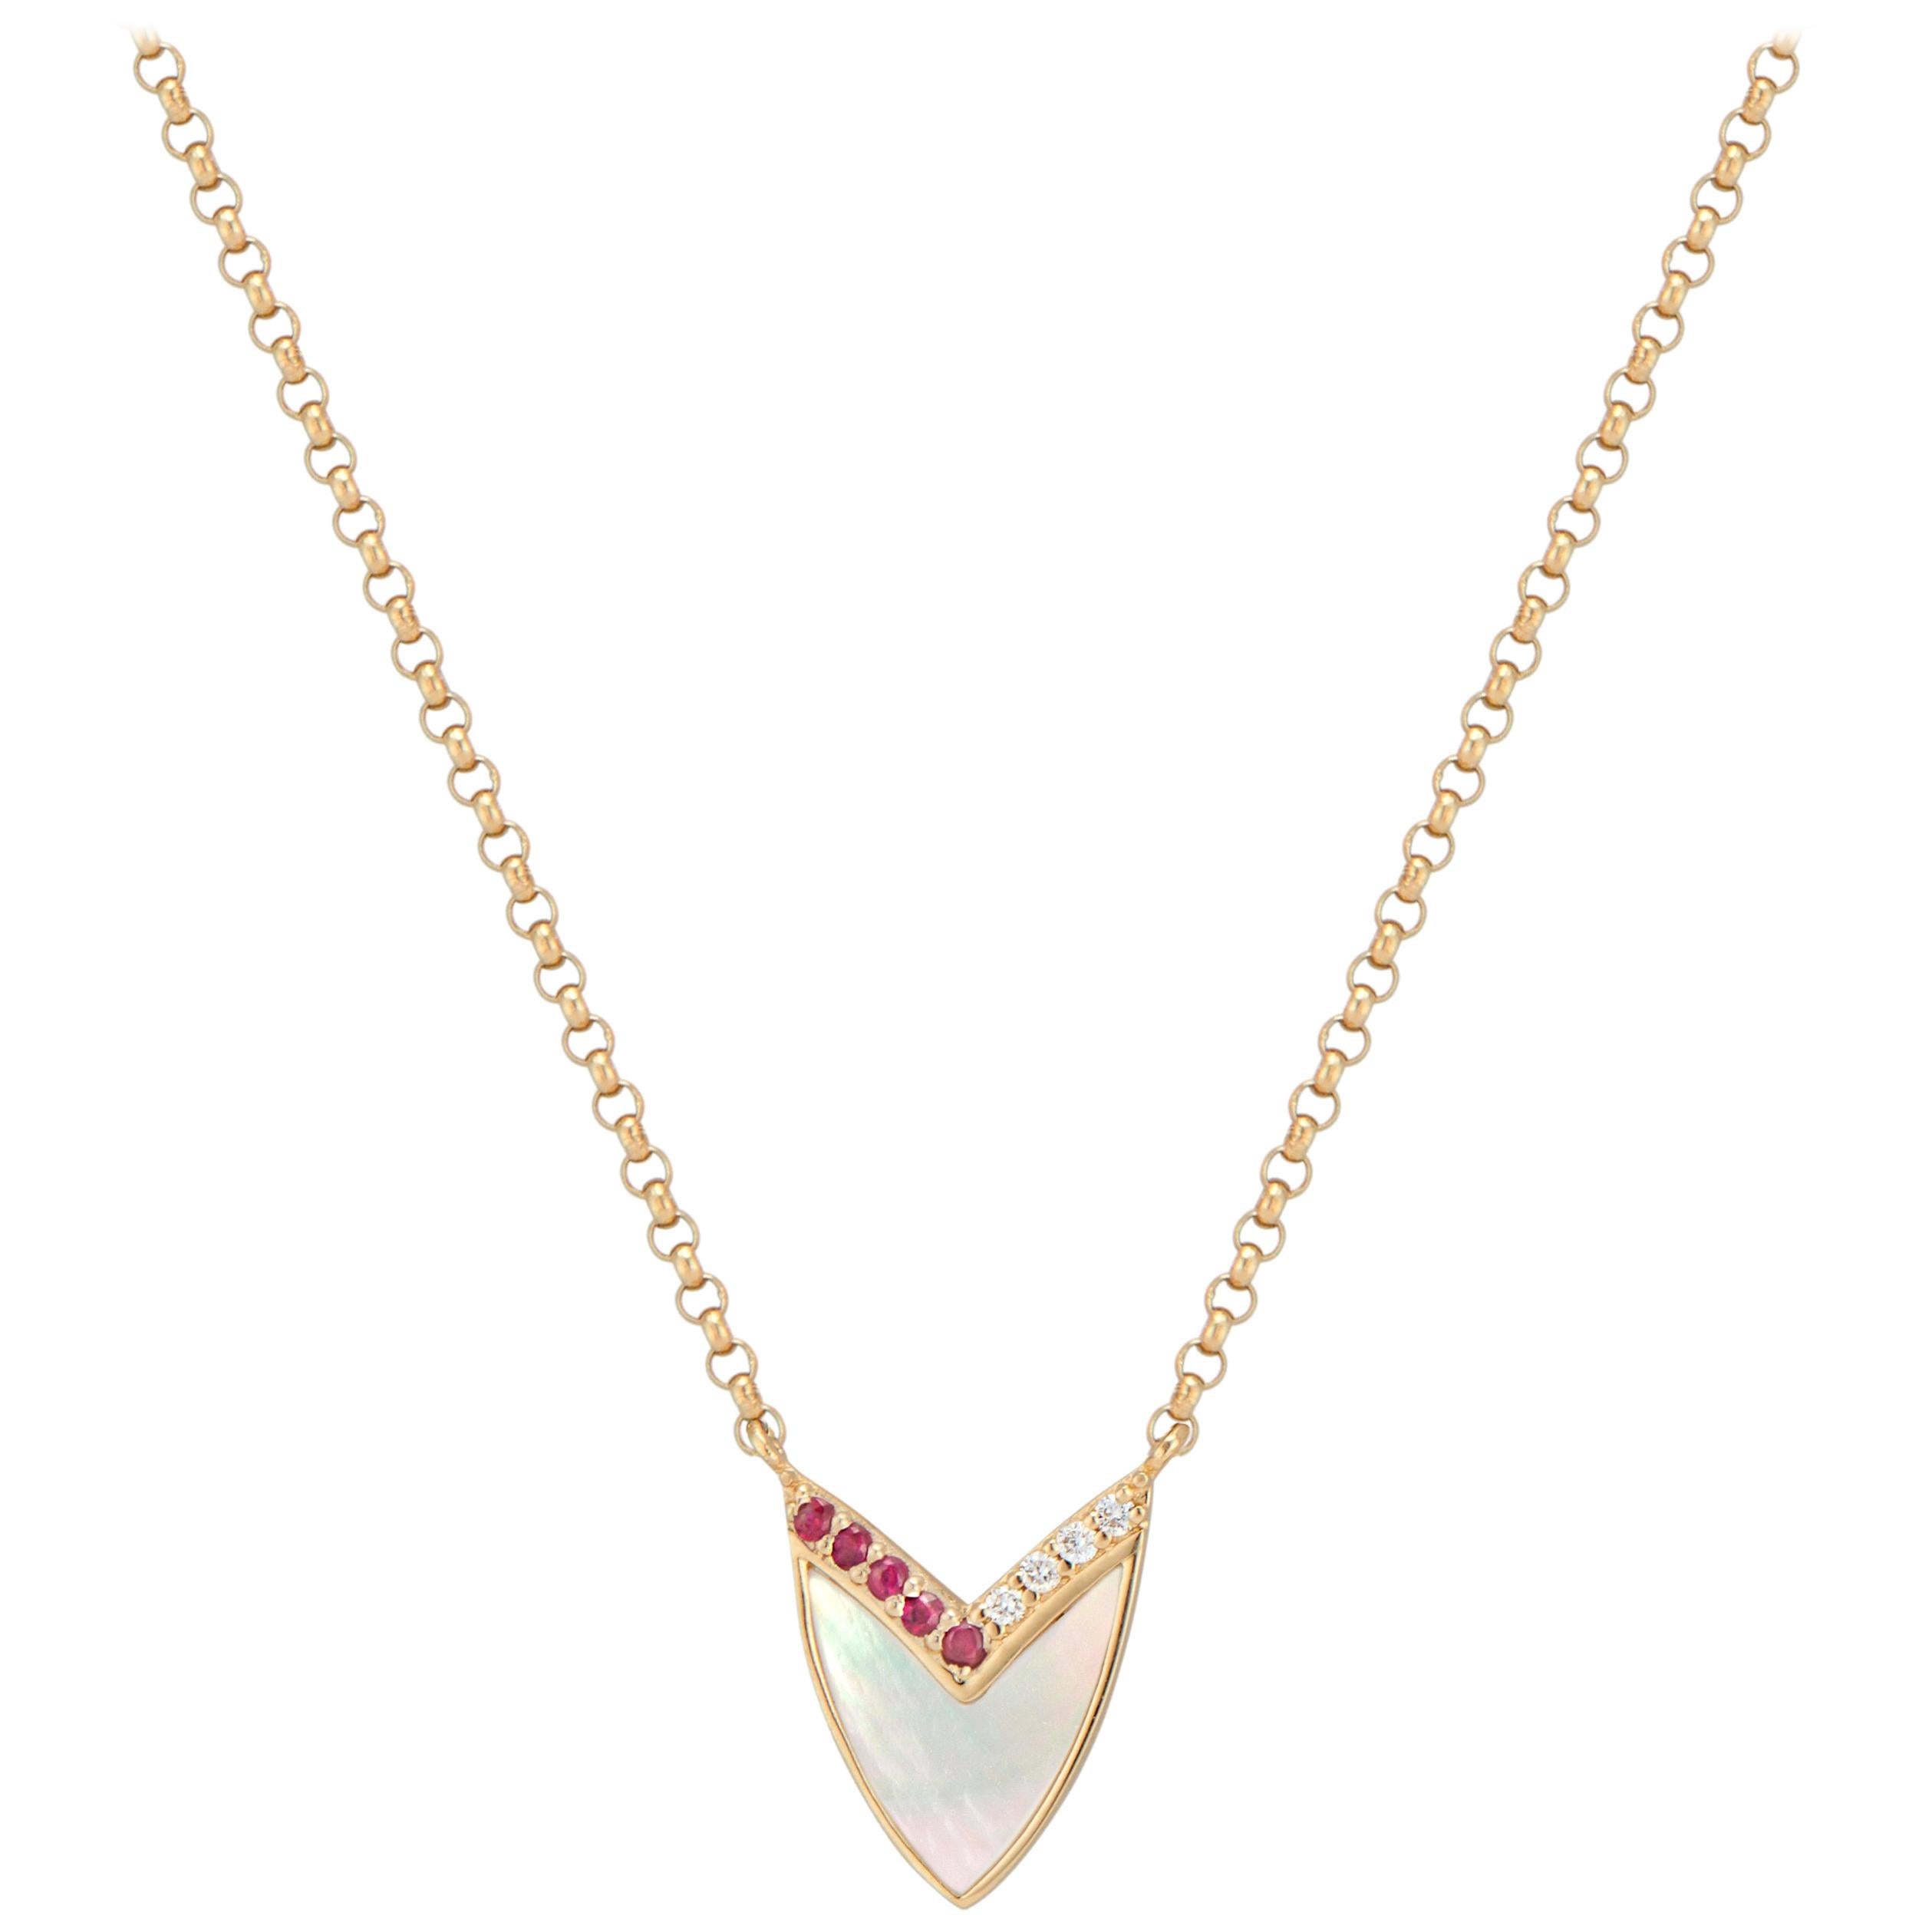 Kubistische Herz-Halskette aus Gelbgold mit Perlmutt, Rubin und Diamanten